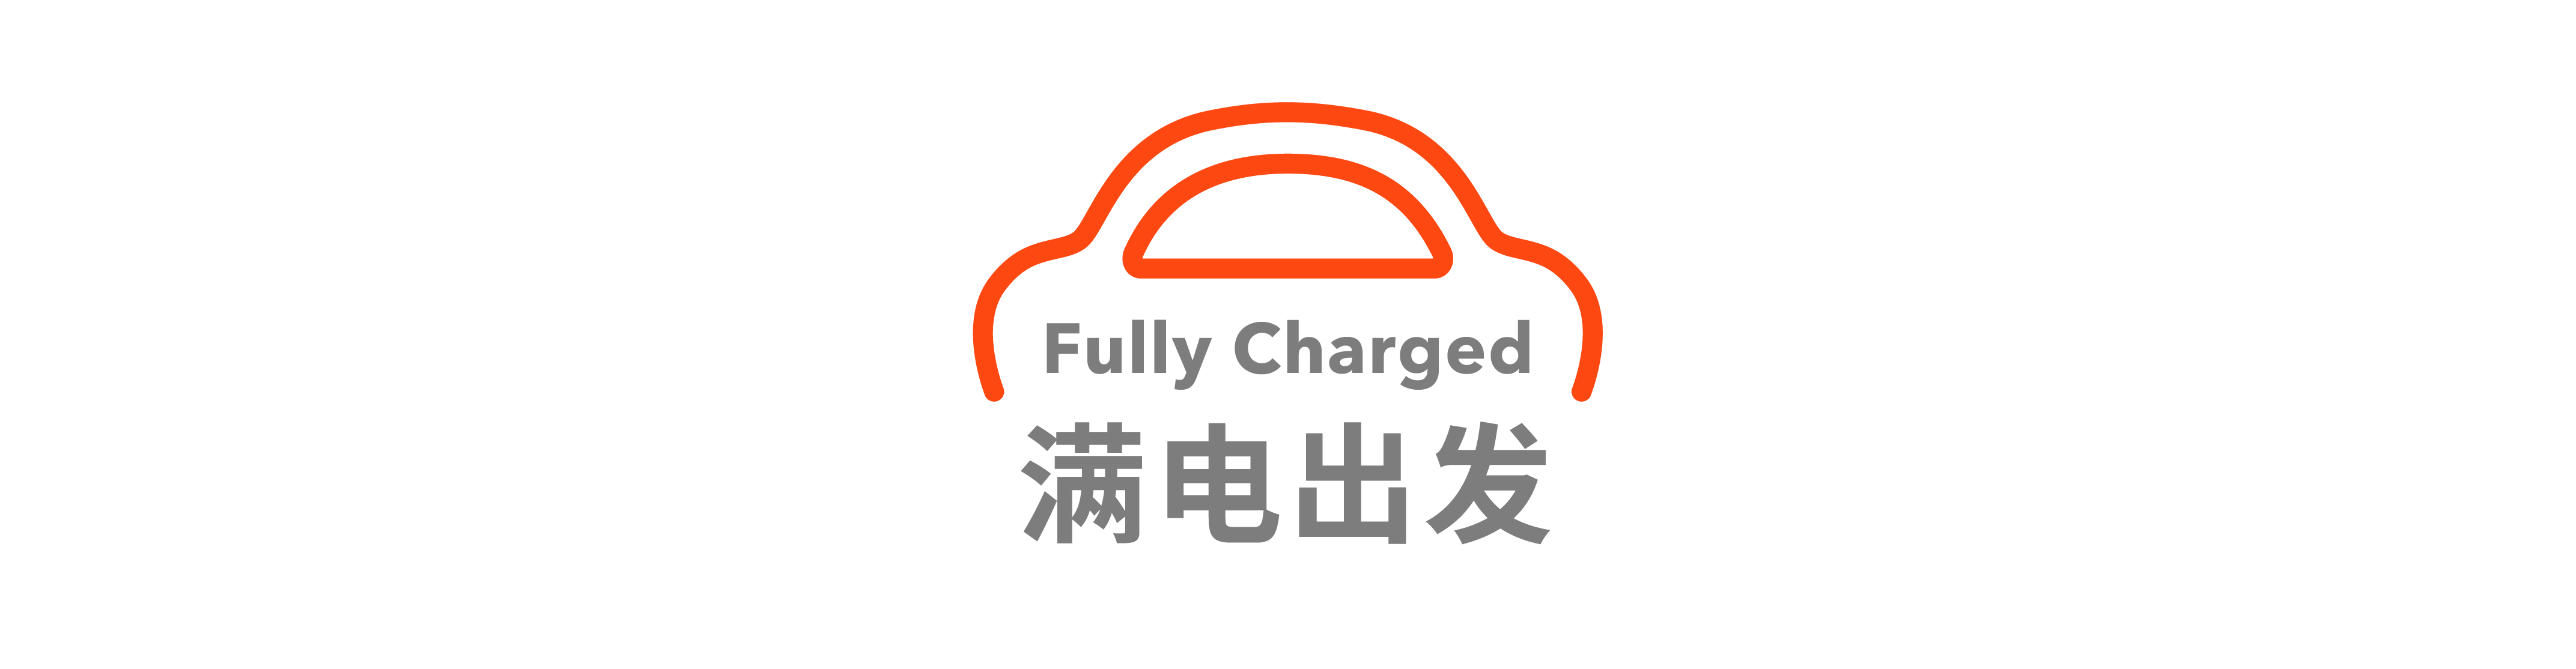 11 - Tesla non compenserà i proprietari di auto per la “giusta protezione” / Auto Xiaomi o a partire da 260.000 yuan / Il sito Web ufficiale di GAC Acura non è più accessibile